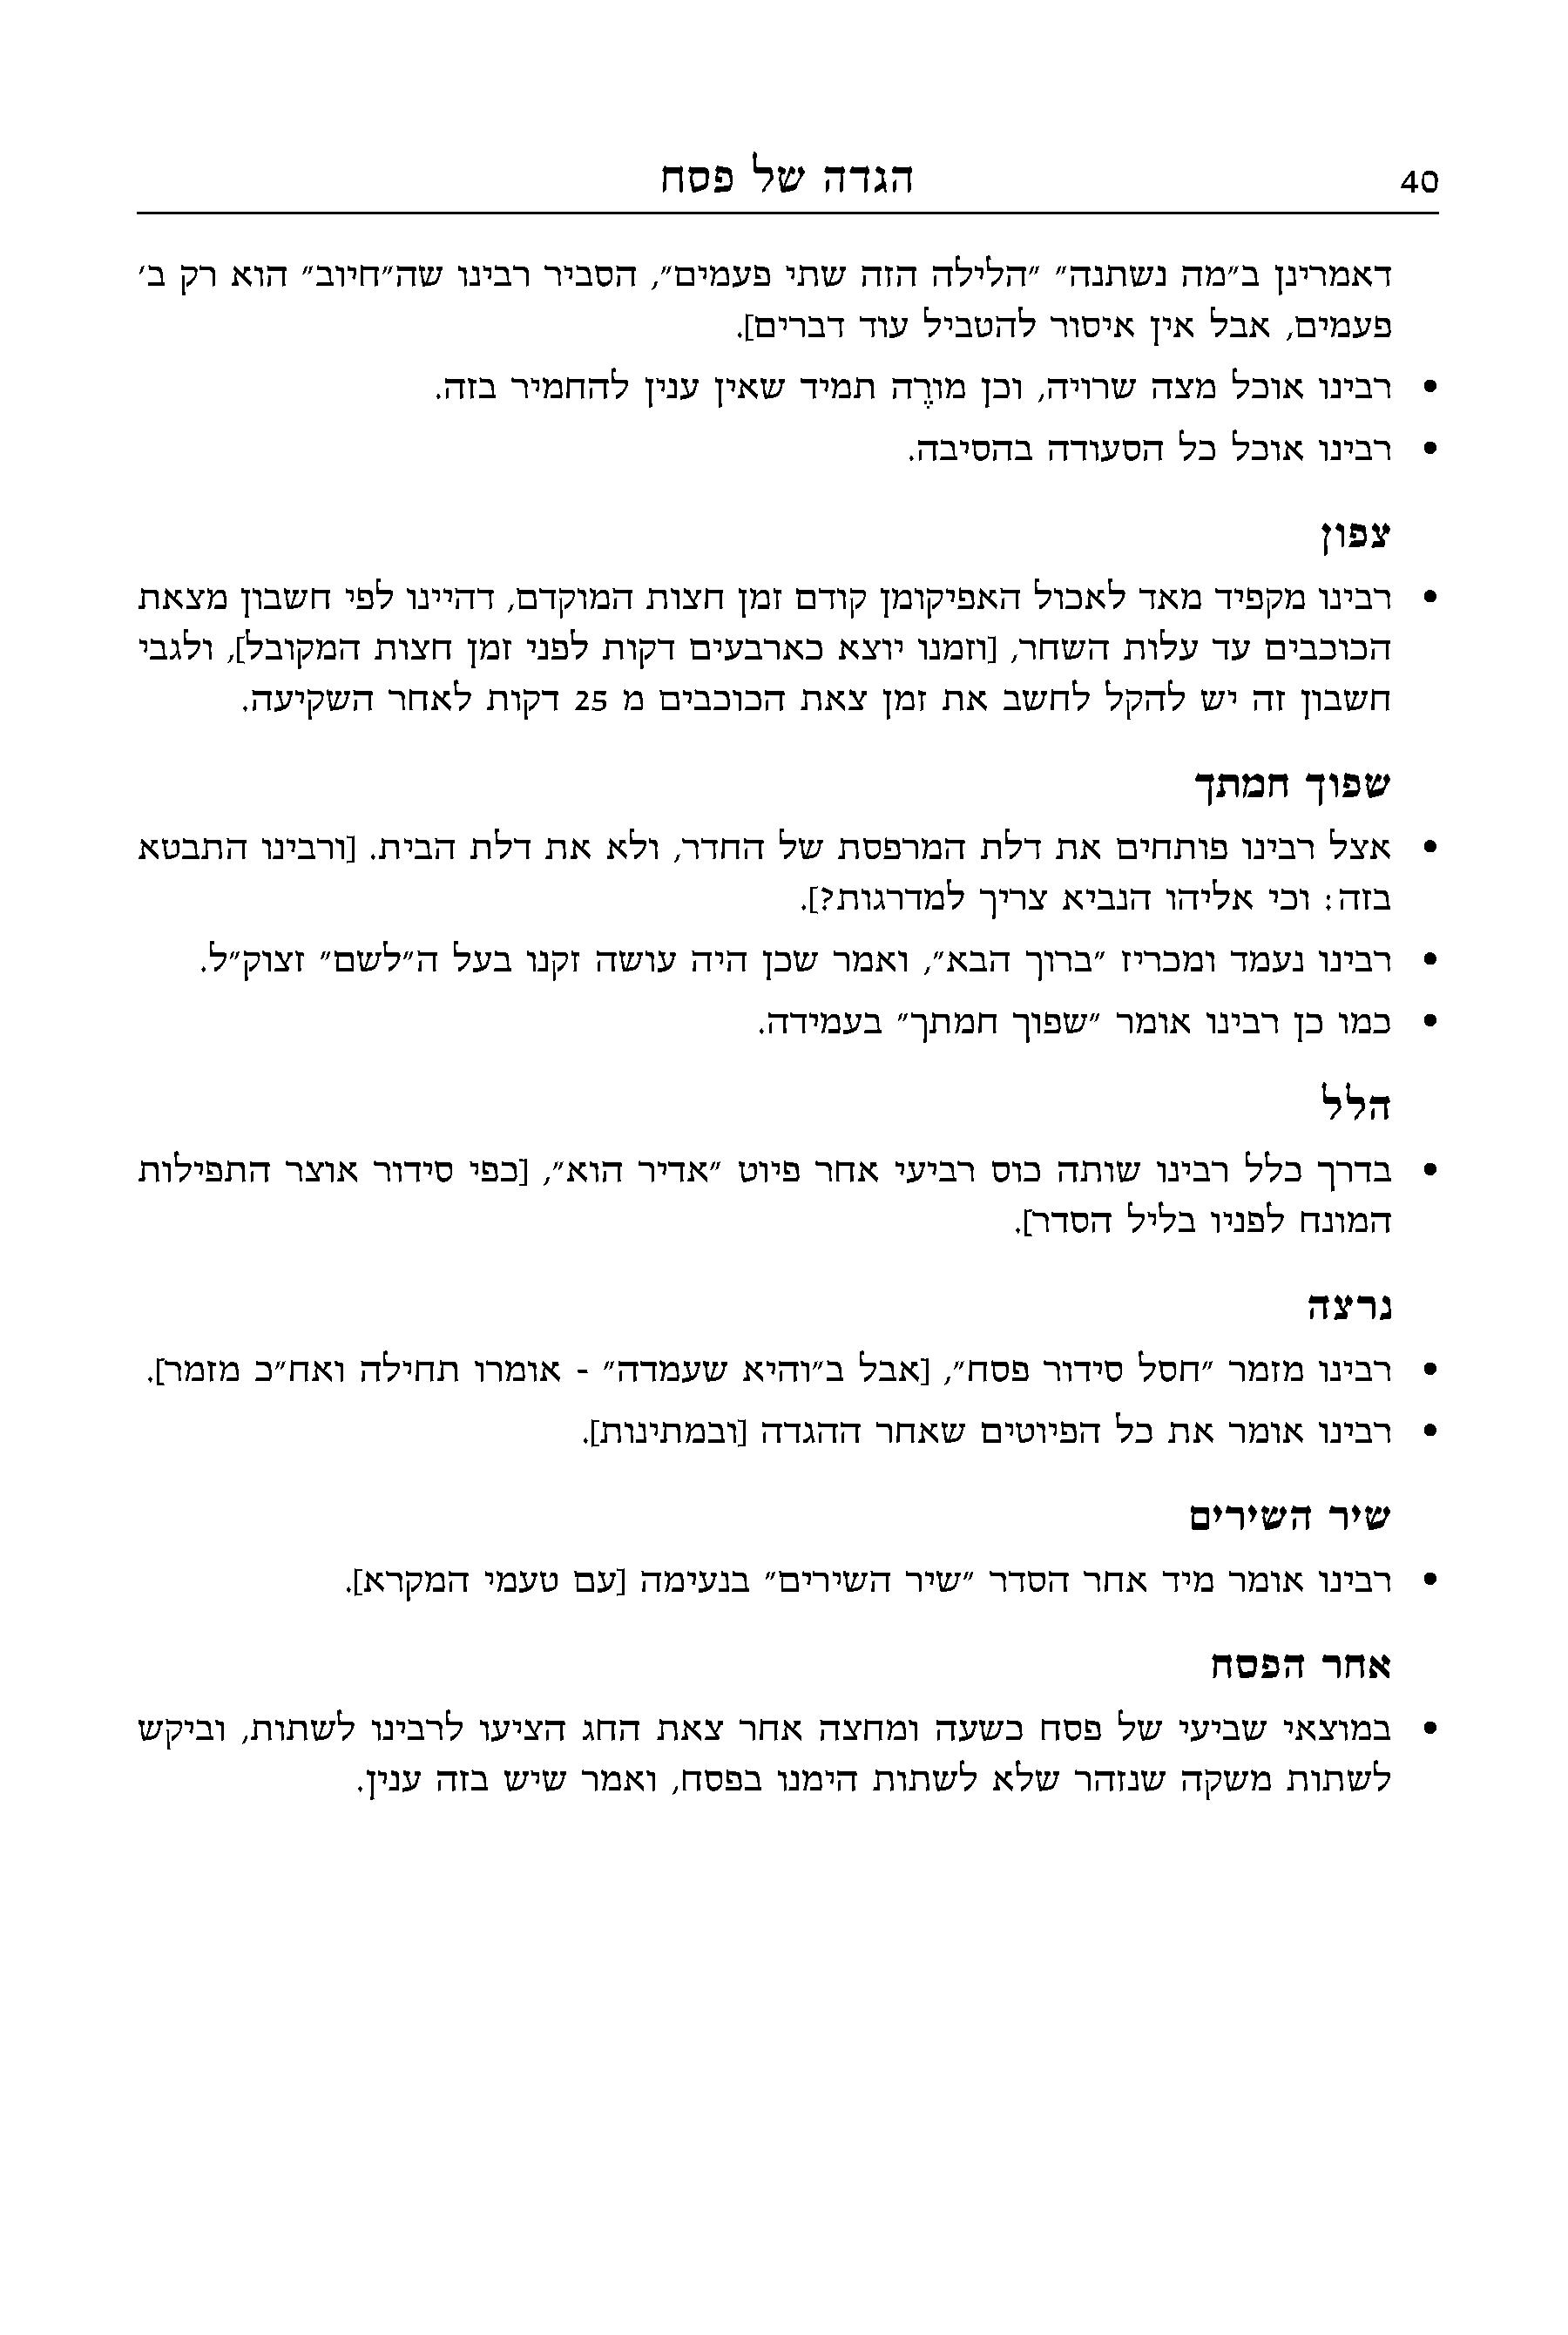 Hebrewbooks_org_58014-6.jpg